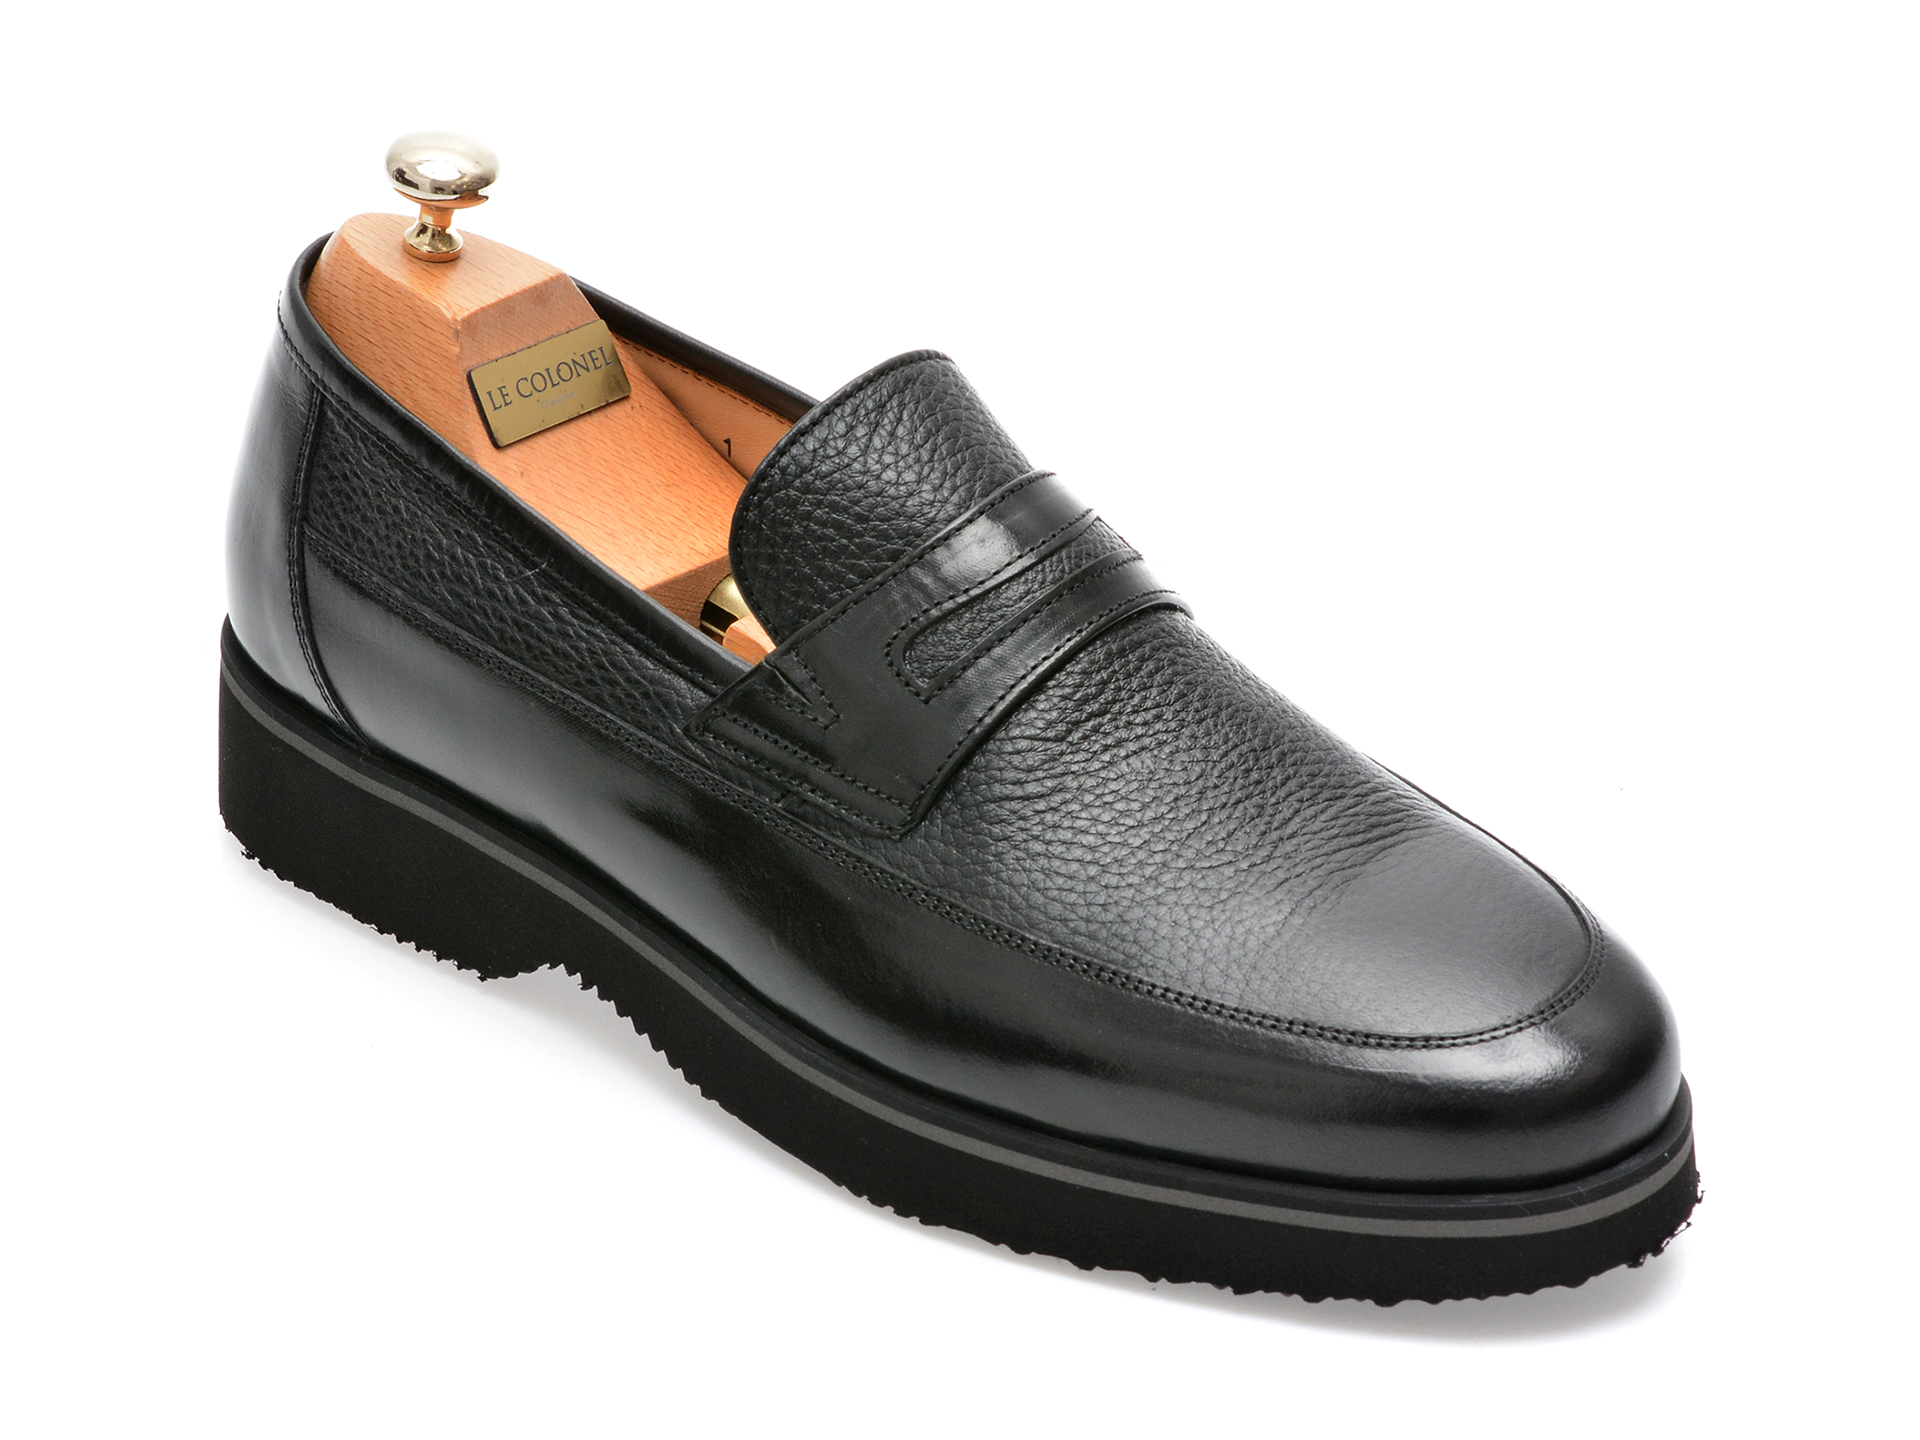 Pantofi LE COLONEL negri, 66101, din piele naturala barbati 2023-03-19